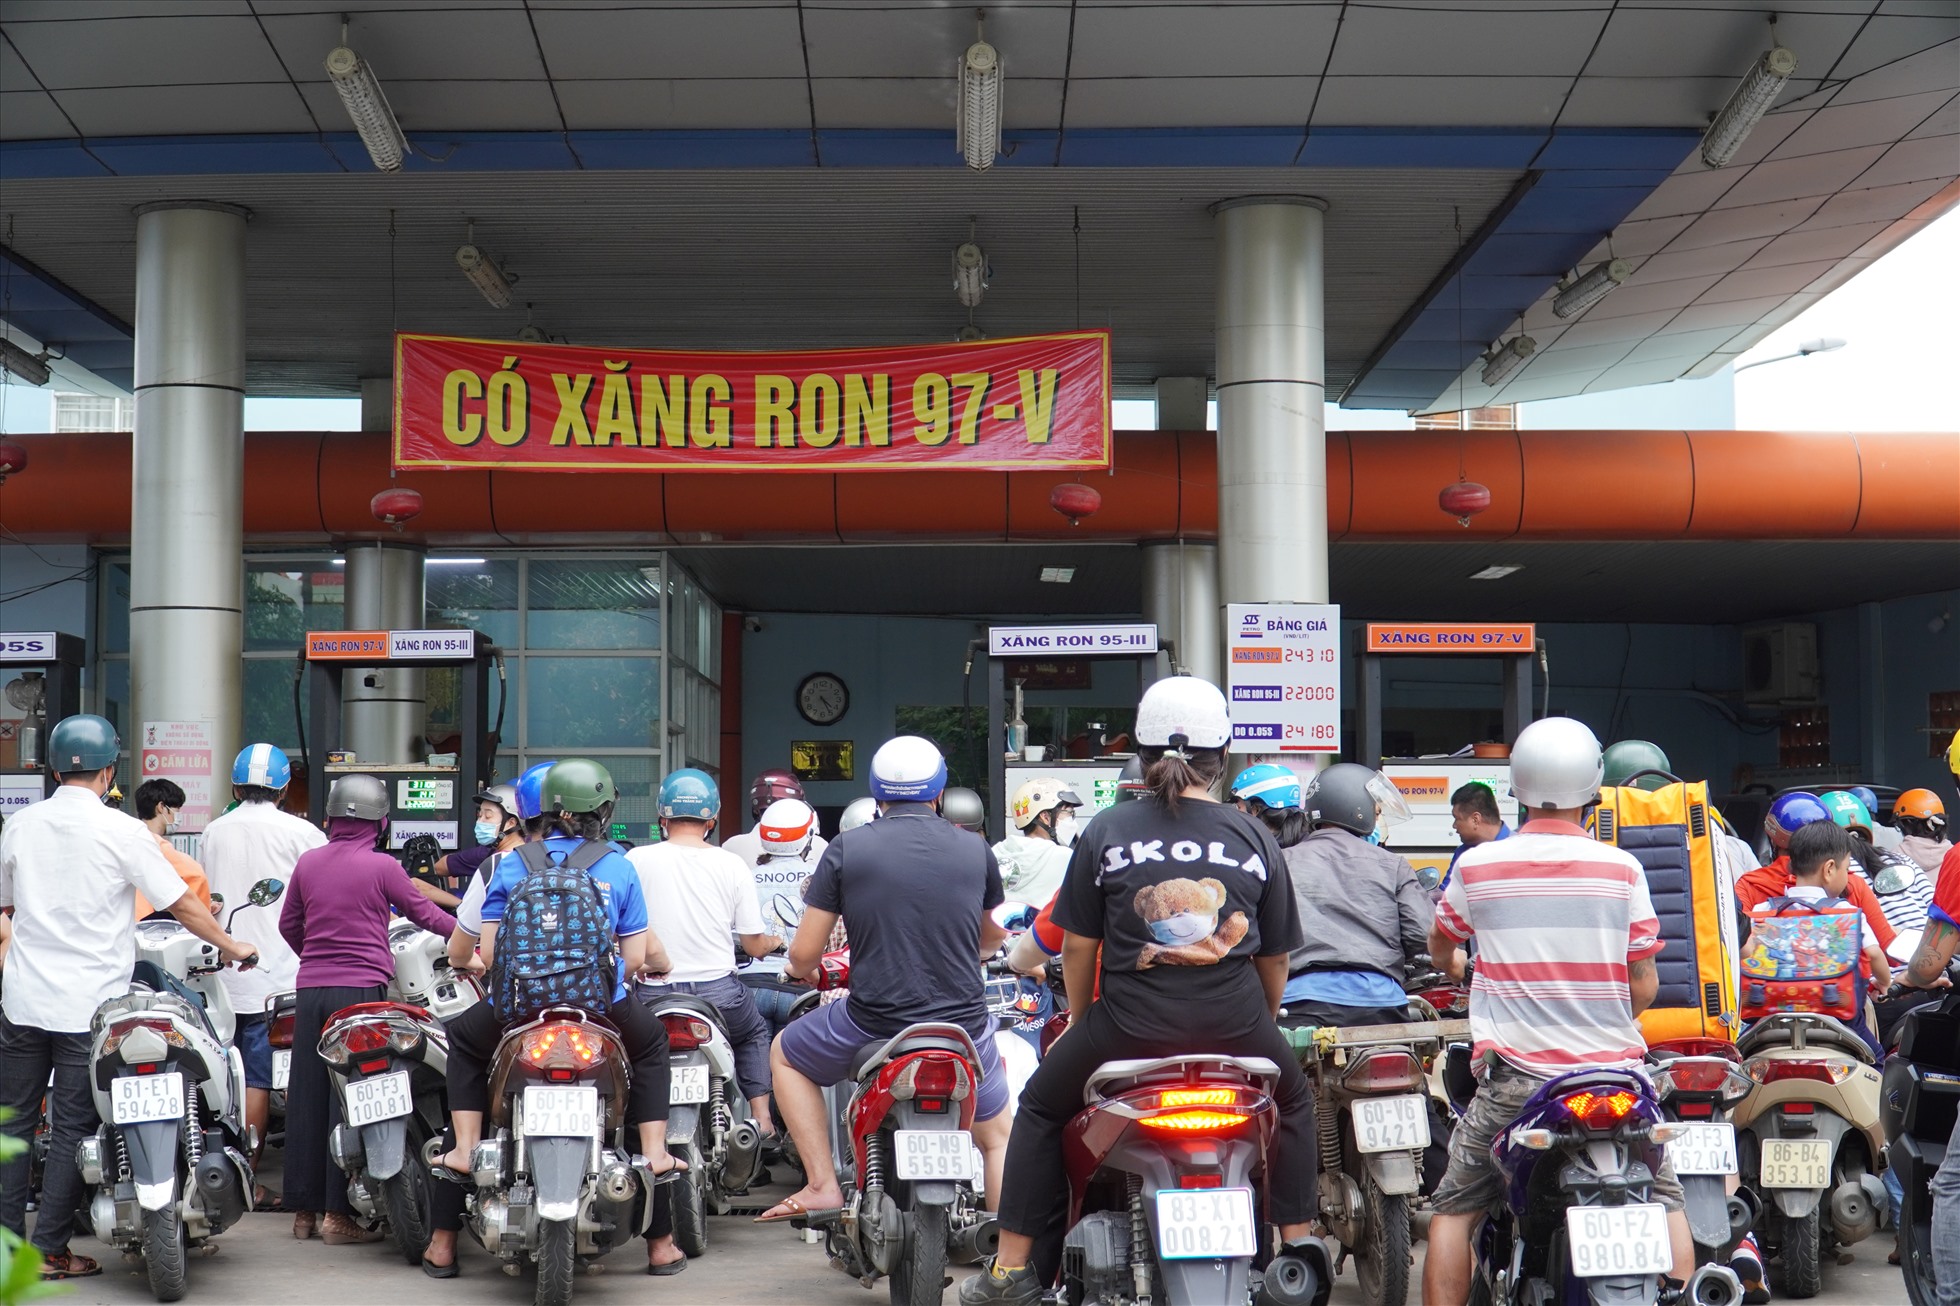 Cây xăng dầu số 1, trên đường Nguyễn Ái Quốc, P.Trung Dũng, TP.Biên Hòa. Ảnh: Hà Anh Chiến